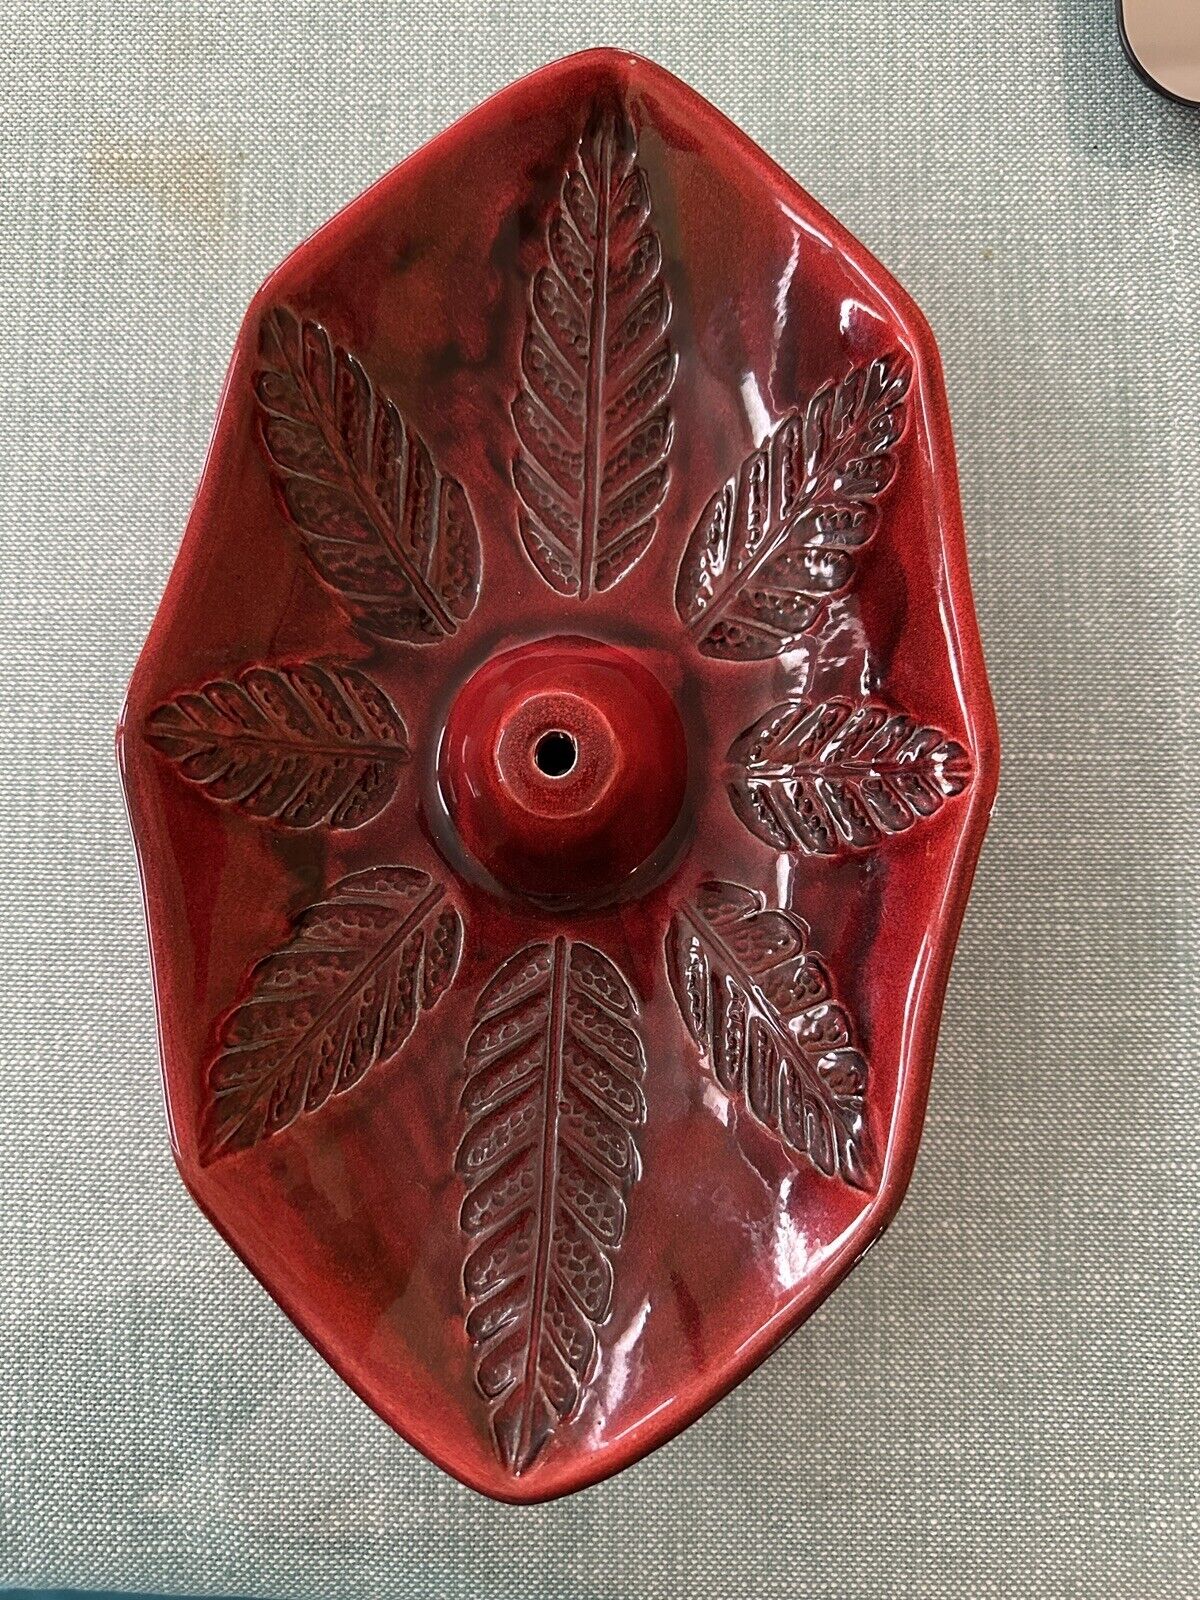 Vintage Cal Original Red Leaf Dish 141 Pottery